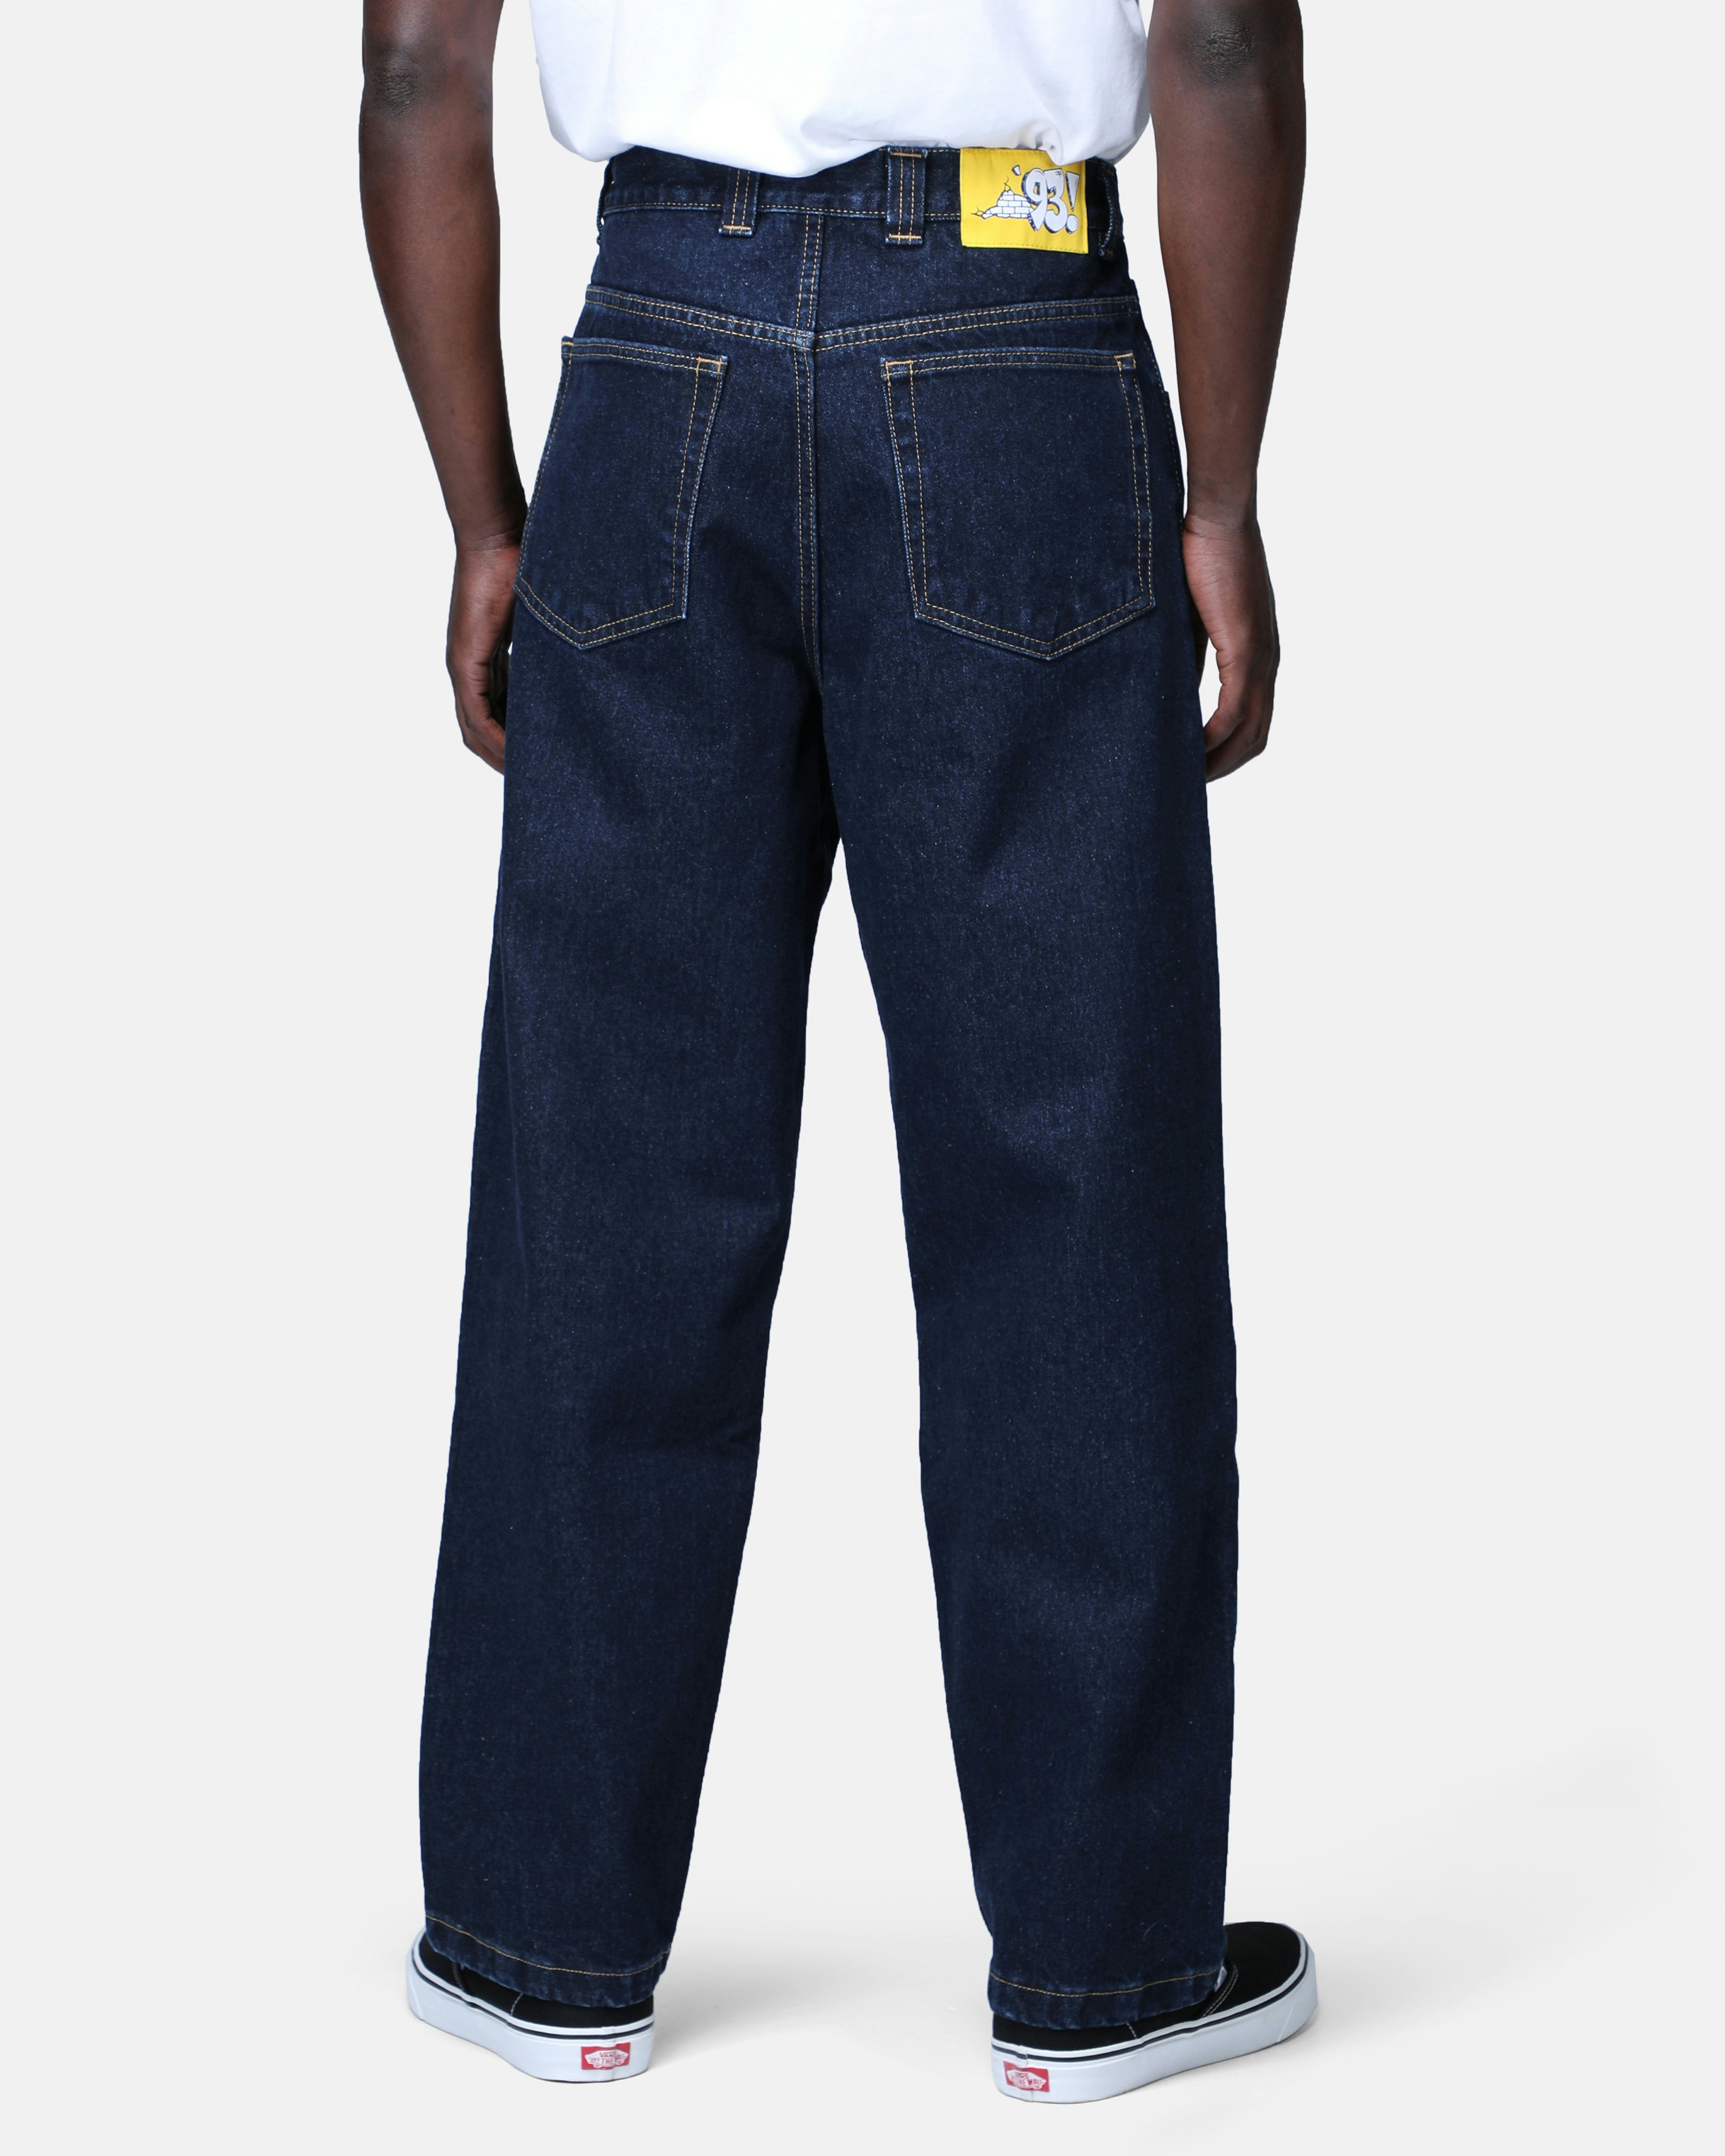 Polar Skate Co. Jeans - 93 Denim Blue | Men | Junkyard